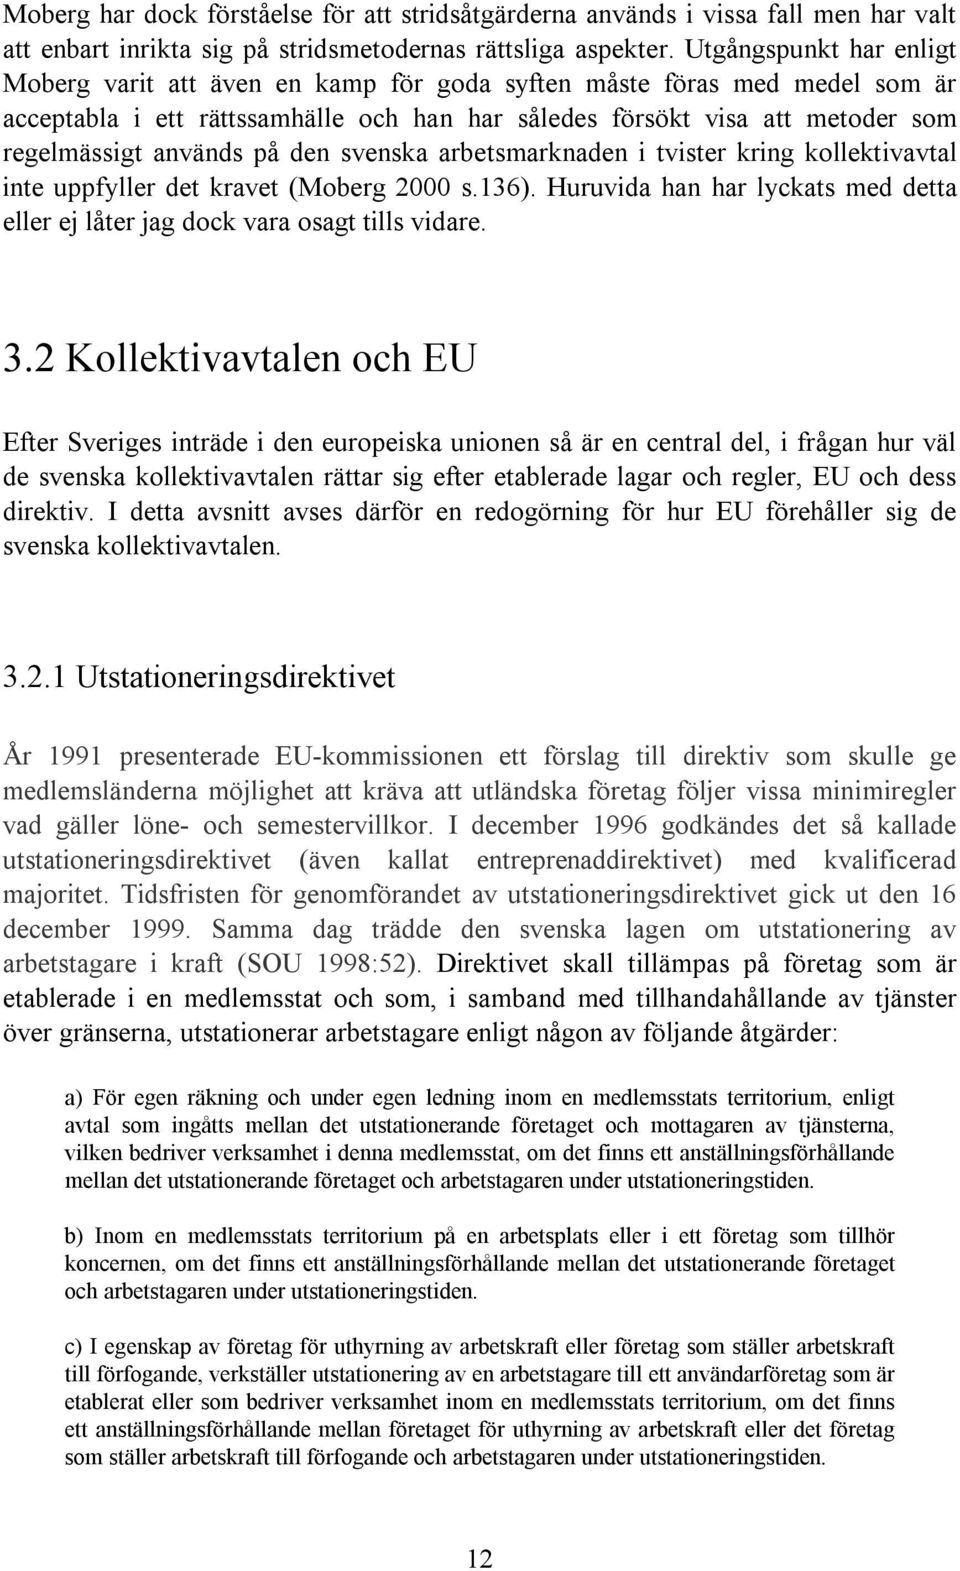 på den svenska arbetsmarknaden i tvister kring kollektivavtal inte uppfyller det kravet (Moberg 2000 s.136). Huruvida han har lyckats med detta eller ej låter jag dock vara osagt tills vidare. 3.